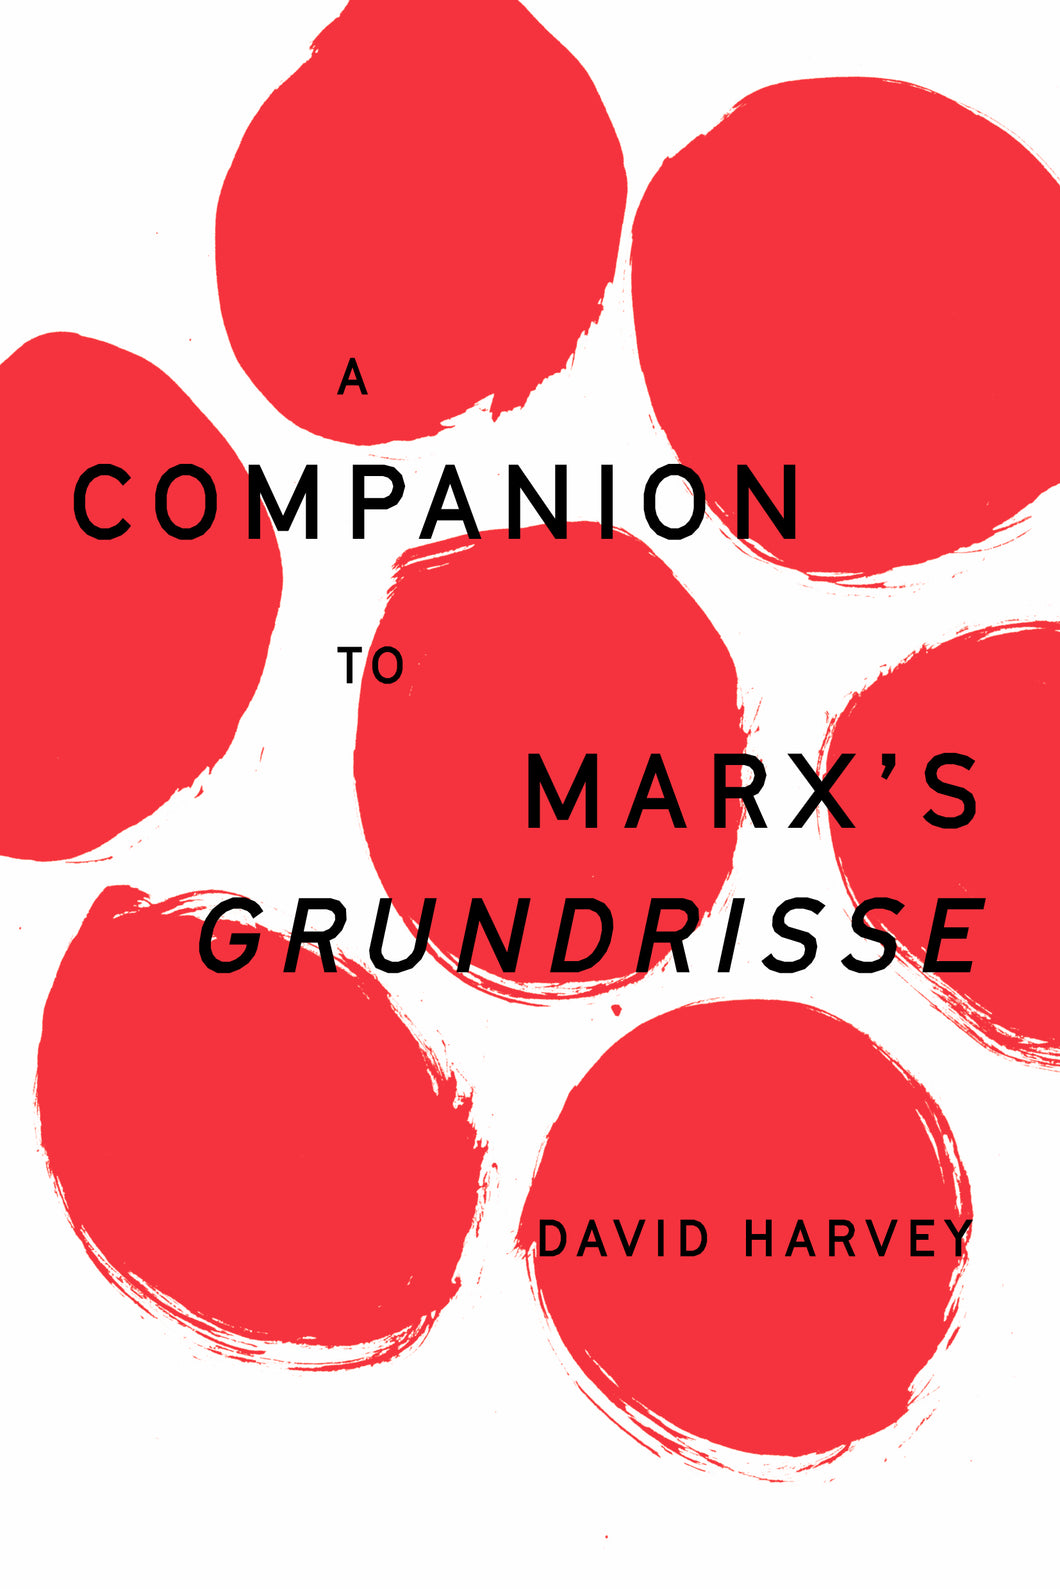 A Companion to Marx's Grundrisse ร้านหนังสือและสิ่งของ เป็นร้านหนังสือภาษาอังกฤษหายาก และร้านกาแฟ หรือ บุ๊คคาเฟ่ ตั้งอยู่สุขุมวิท กรุงเทพ